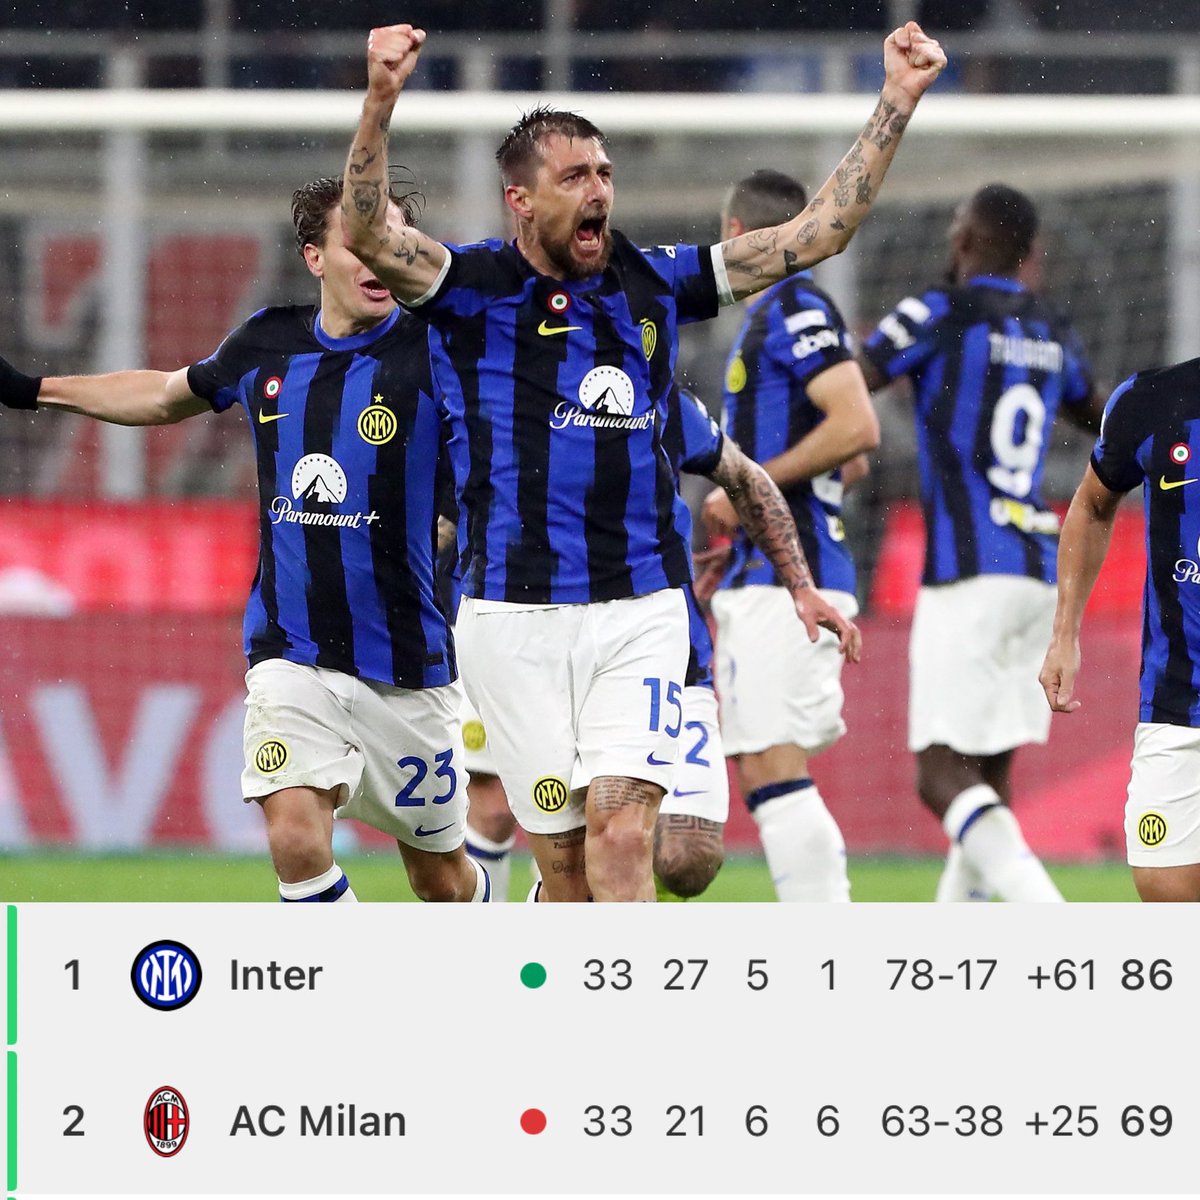 Con gol de Acerbi, el Inter se adelanta 1-0 ante el AC Milan en el derbi. De mantenerse el resultado, los Nerazurri están a 45 minutos de proclamarse CAMPEONES de la Serie A. Los de Inzaghi podrían levantar el título en frente de su máximo rival.